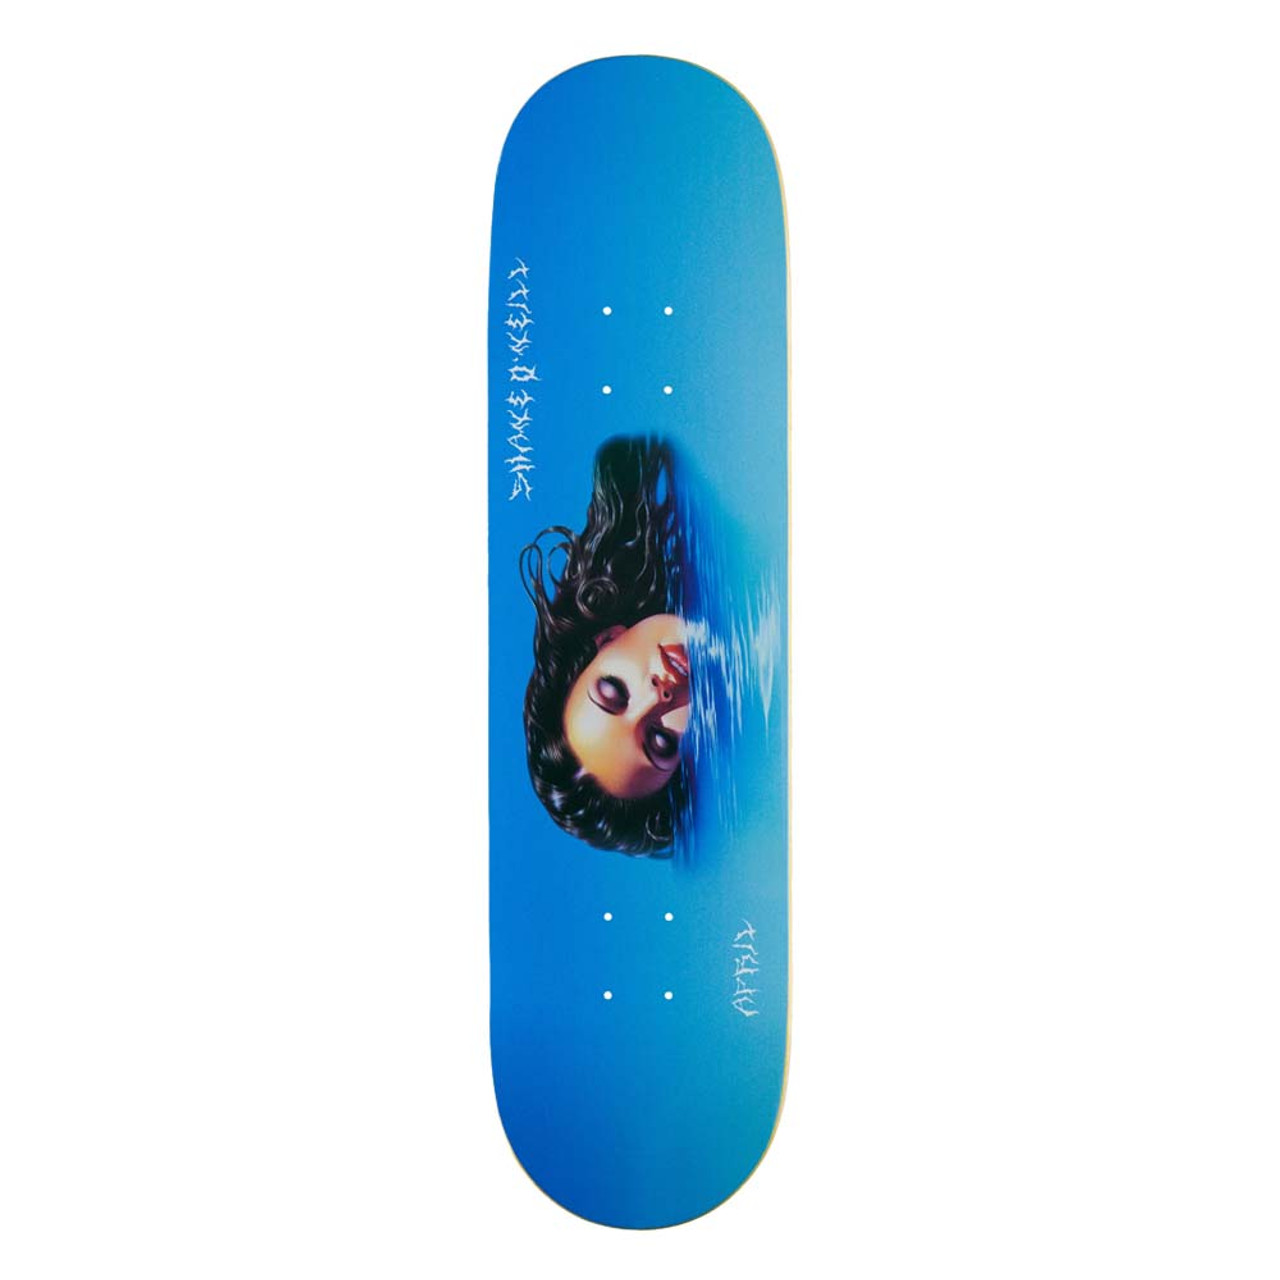 APRIL Lake Lady Skateboard Deck 8.125